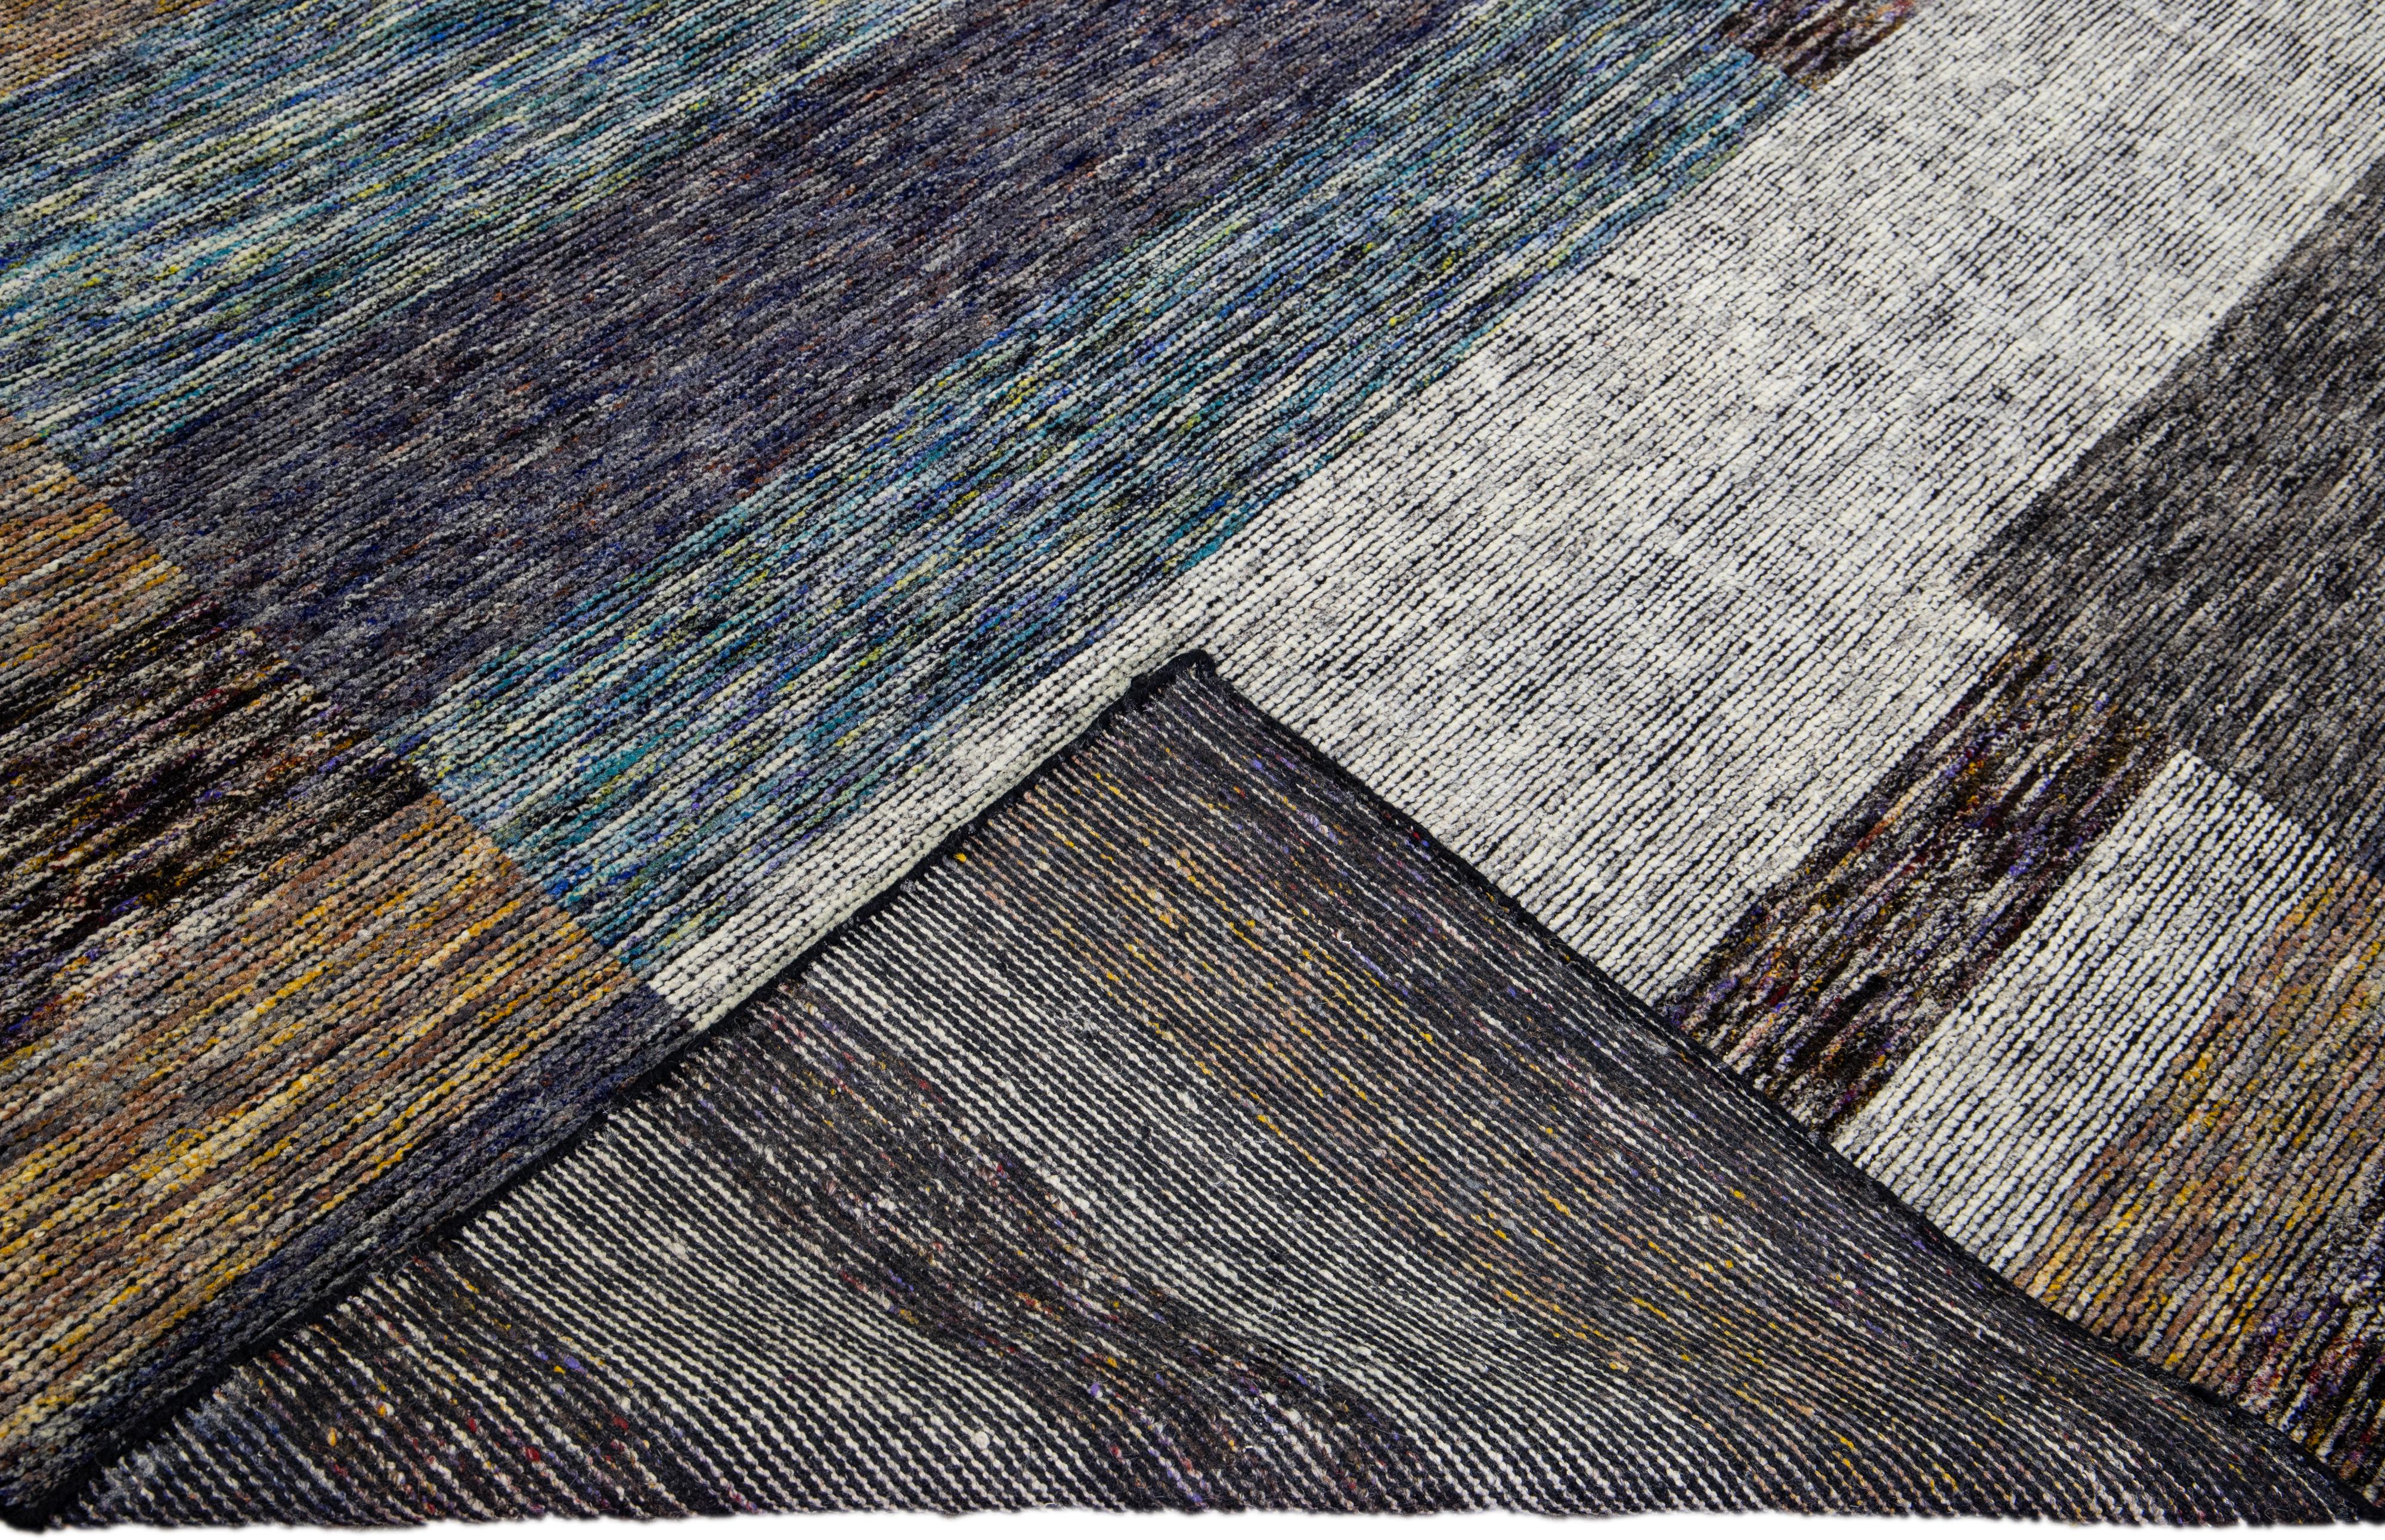 Wunderschöner moderner handgeknüpfter Wollteppich aus der Safi-Kollektion von Apadana mit einem erdigen Farbfeld. Dieser moderne Teppich hat blaue, graue und braune Akzente ein wunderschönes Layout abstraktes Design.

Dieser Teppich misst: 9'2